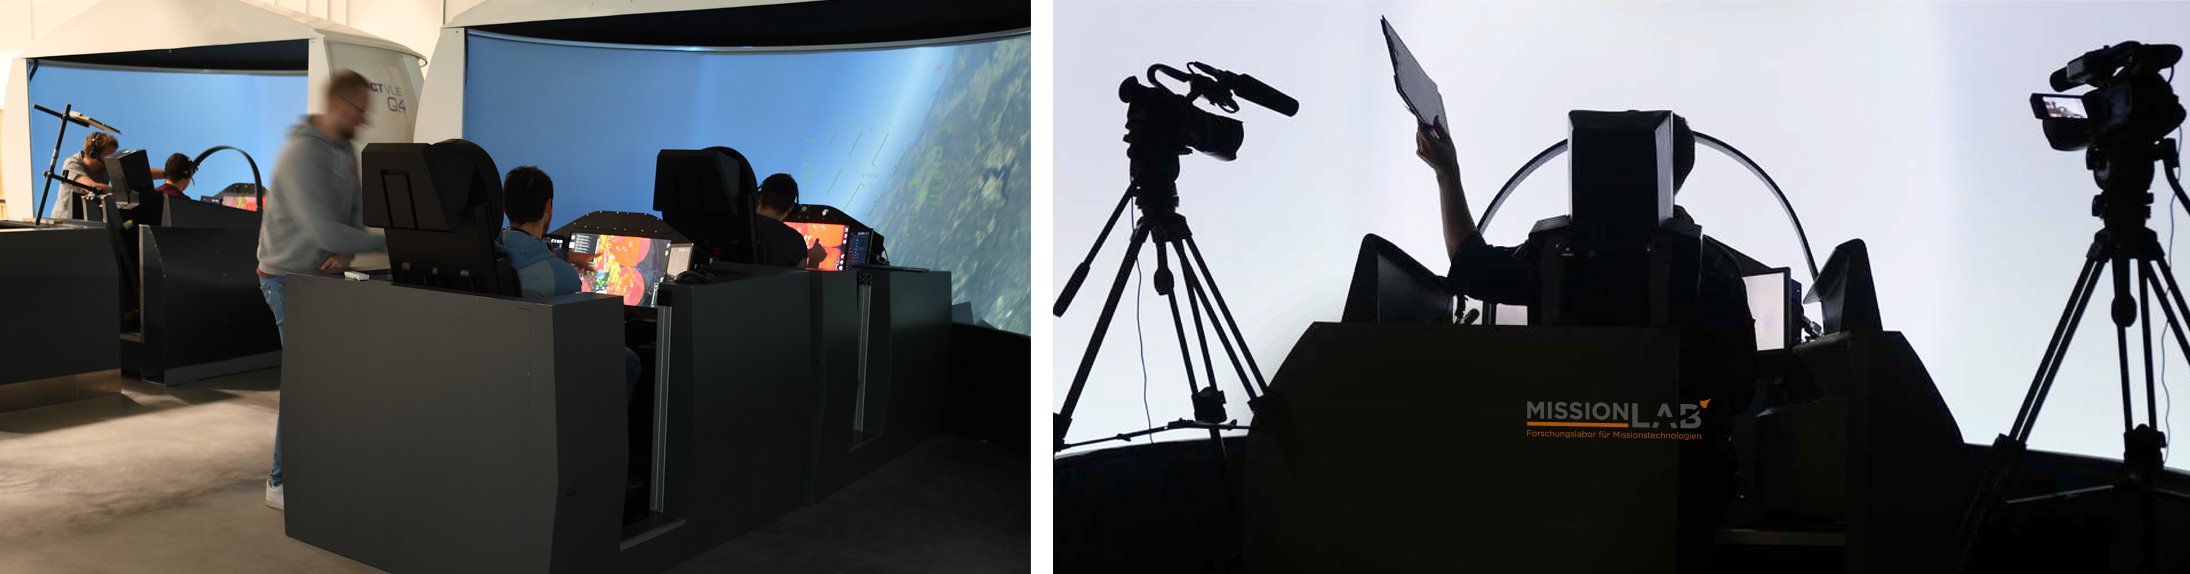 Zwei Fotos im MissionLab-Labor zu Untersuchungen zu wissenschaftlichen und experimentellen Untersuchungen von Missionstechnologien in der Simulation und im Flugversuch